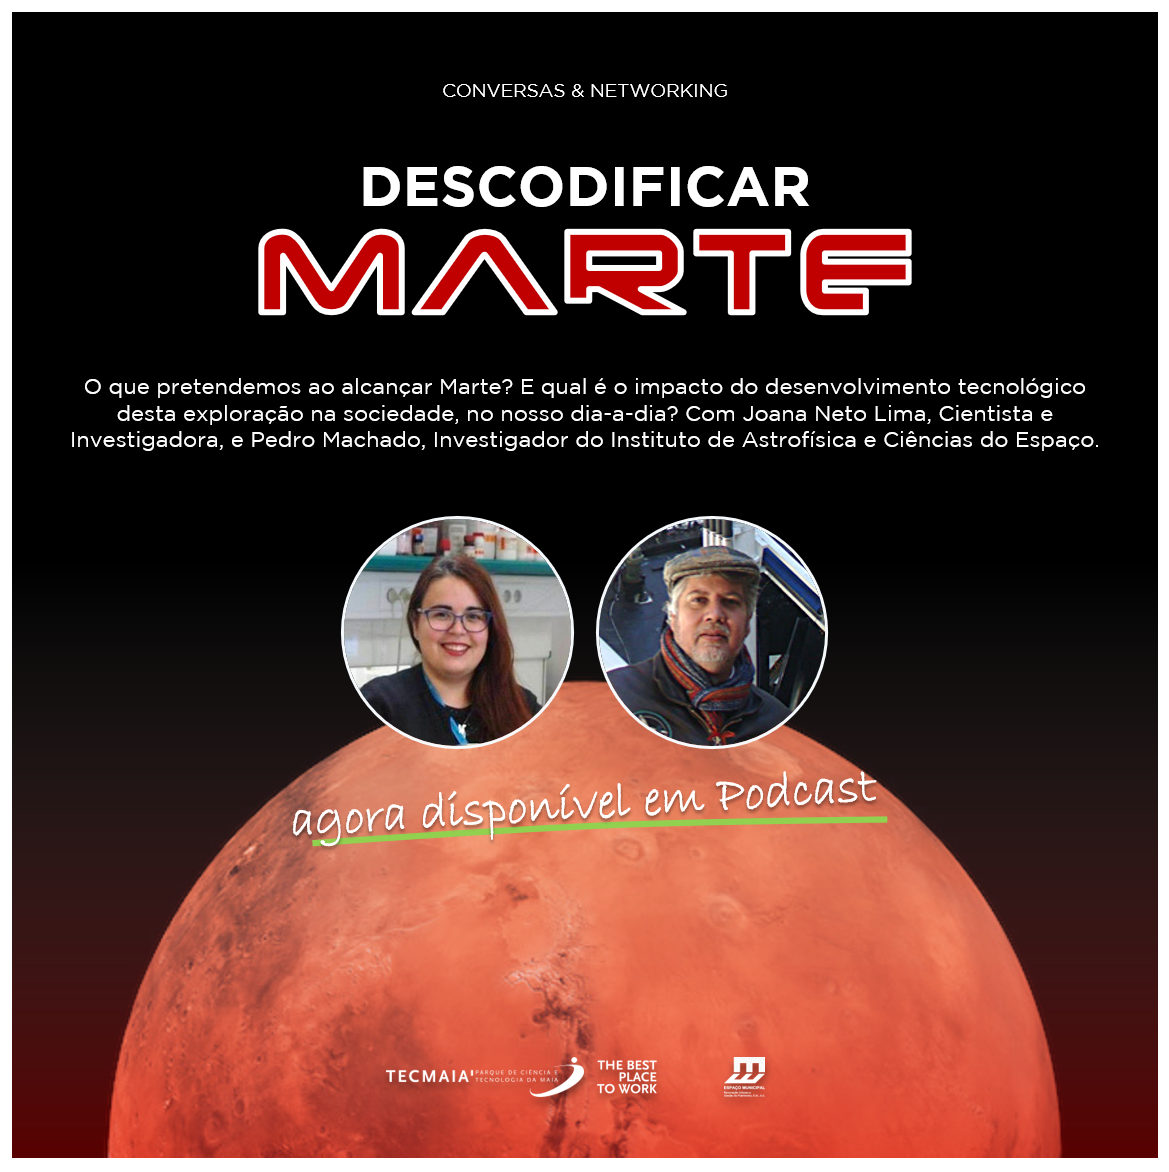 Webtalk "Descodificar Marte"